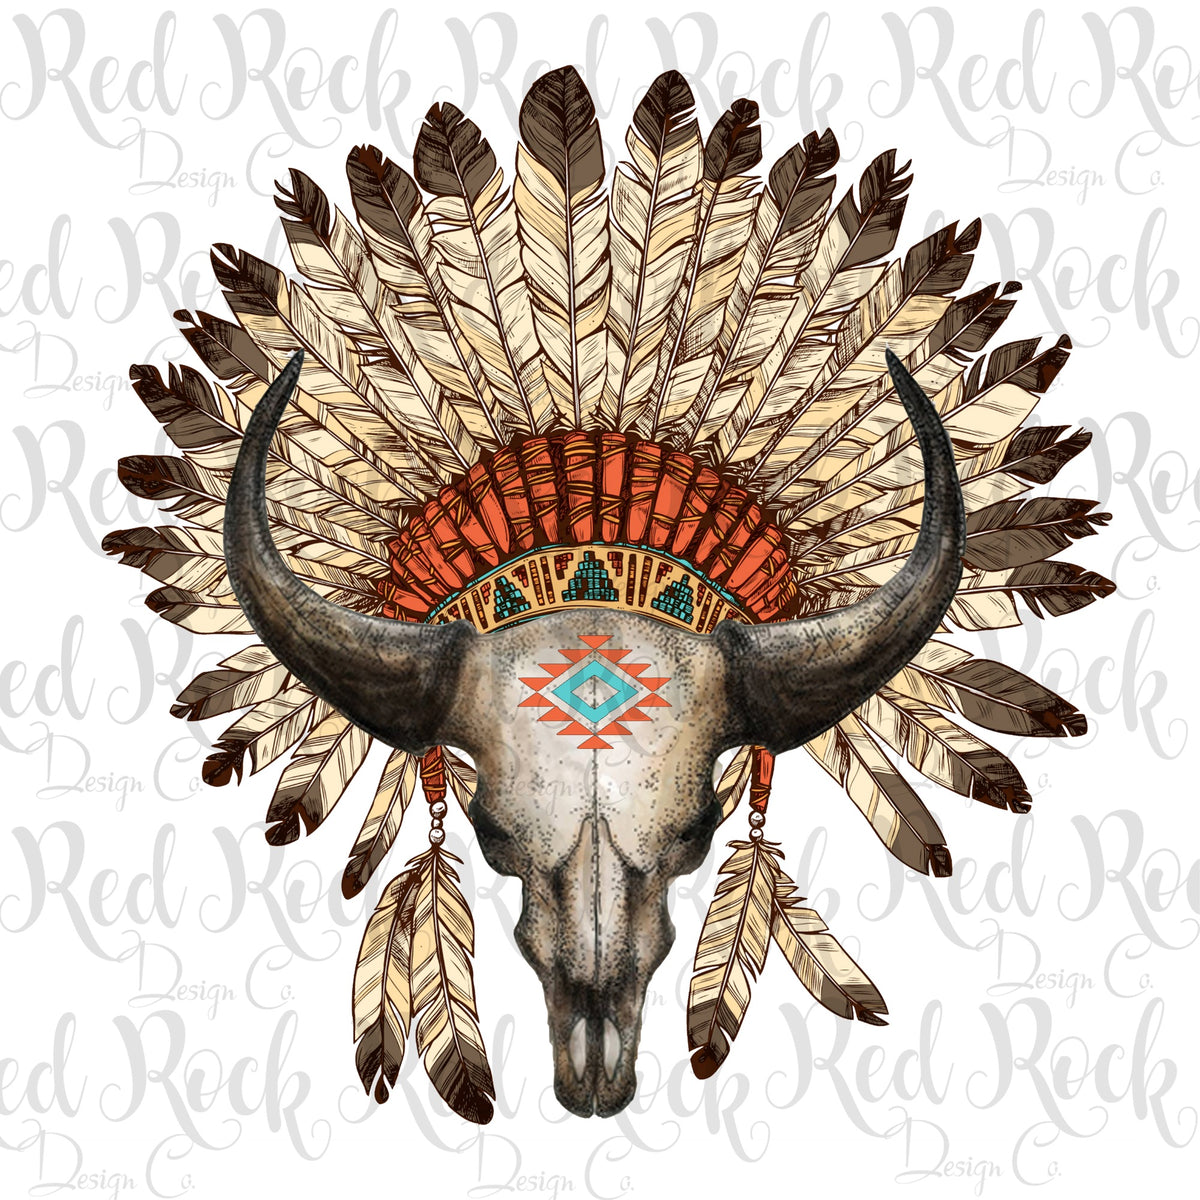 Skull & Headdress - Direct to Film – Red Rock Design Co.